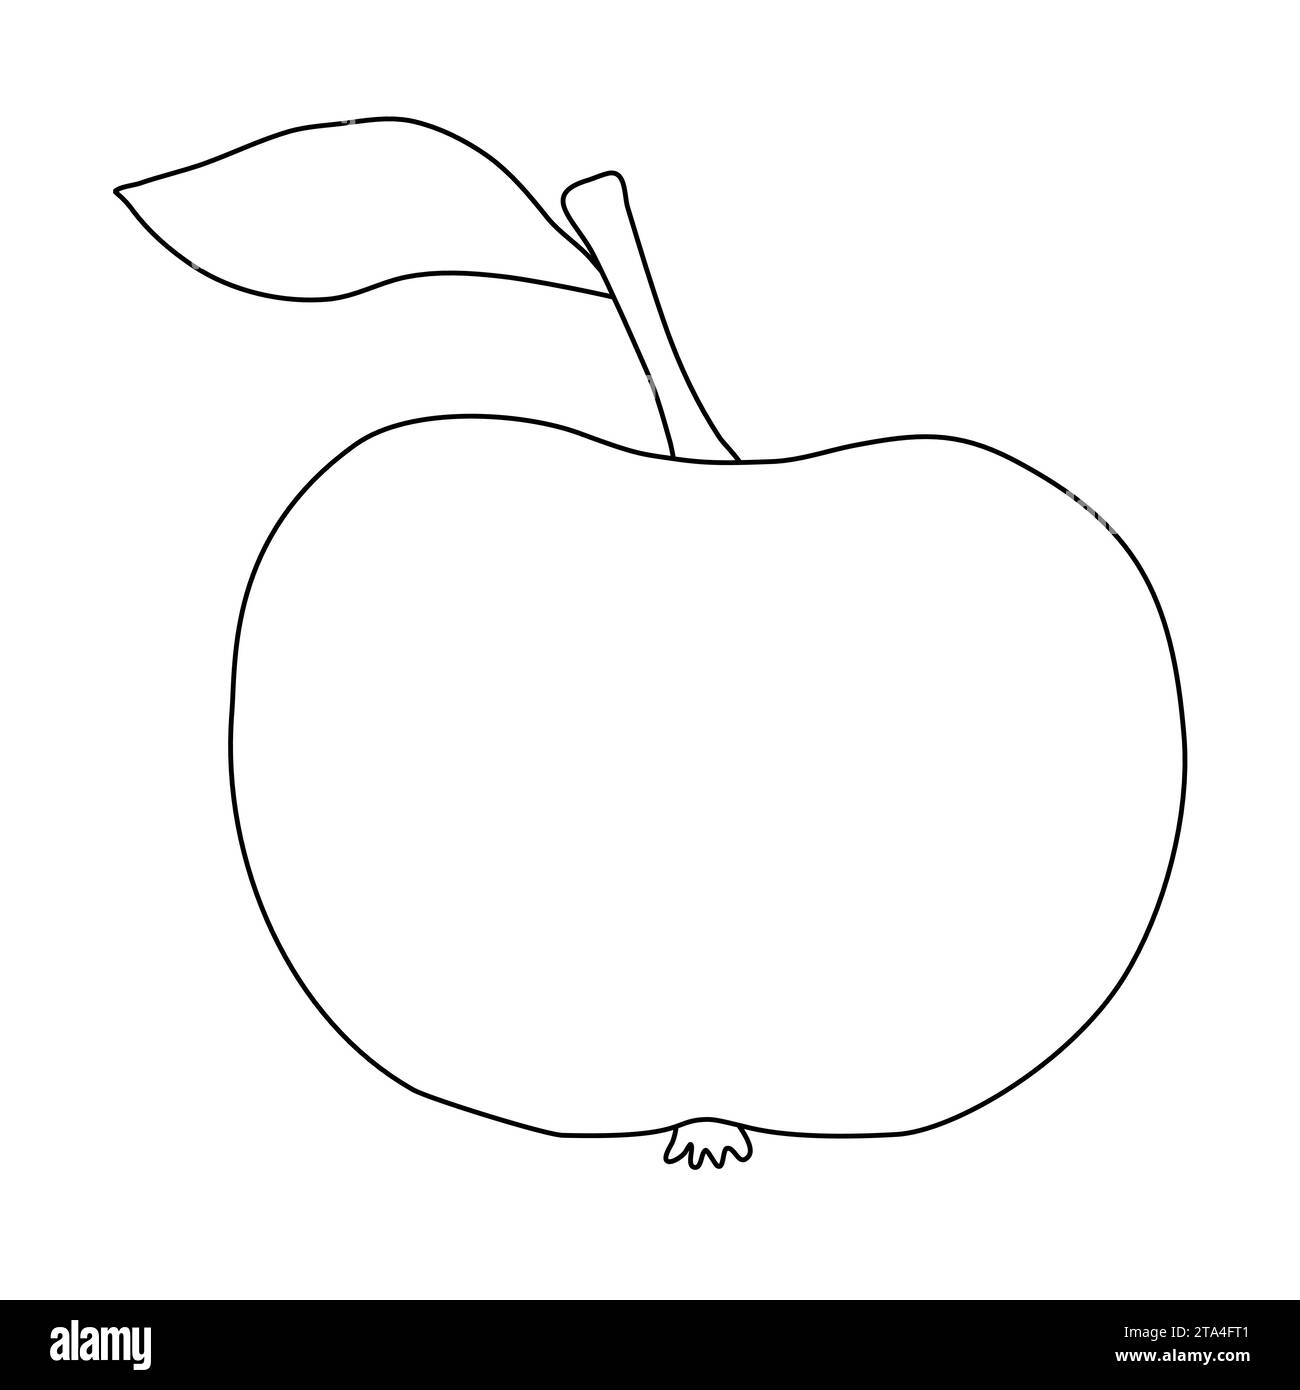 Apfelfrucht mit Stiel und Blatt, Doodle-Stil flache Vektor-Umrissillustration für Kinder Malbuch Stock Vektor